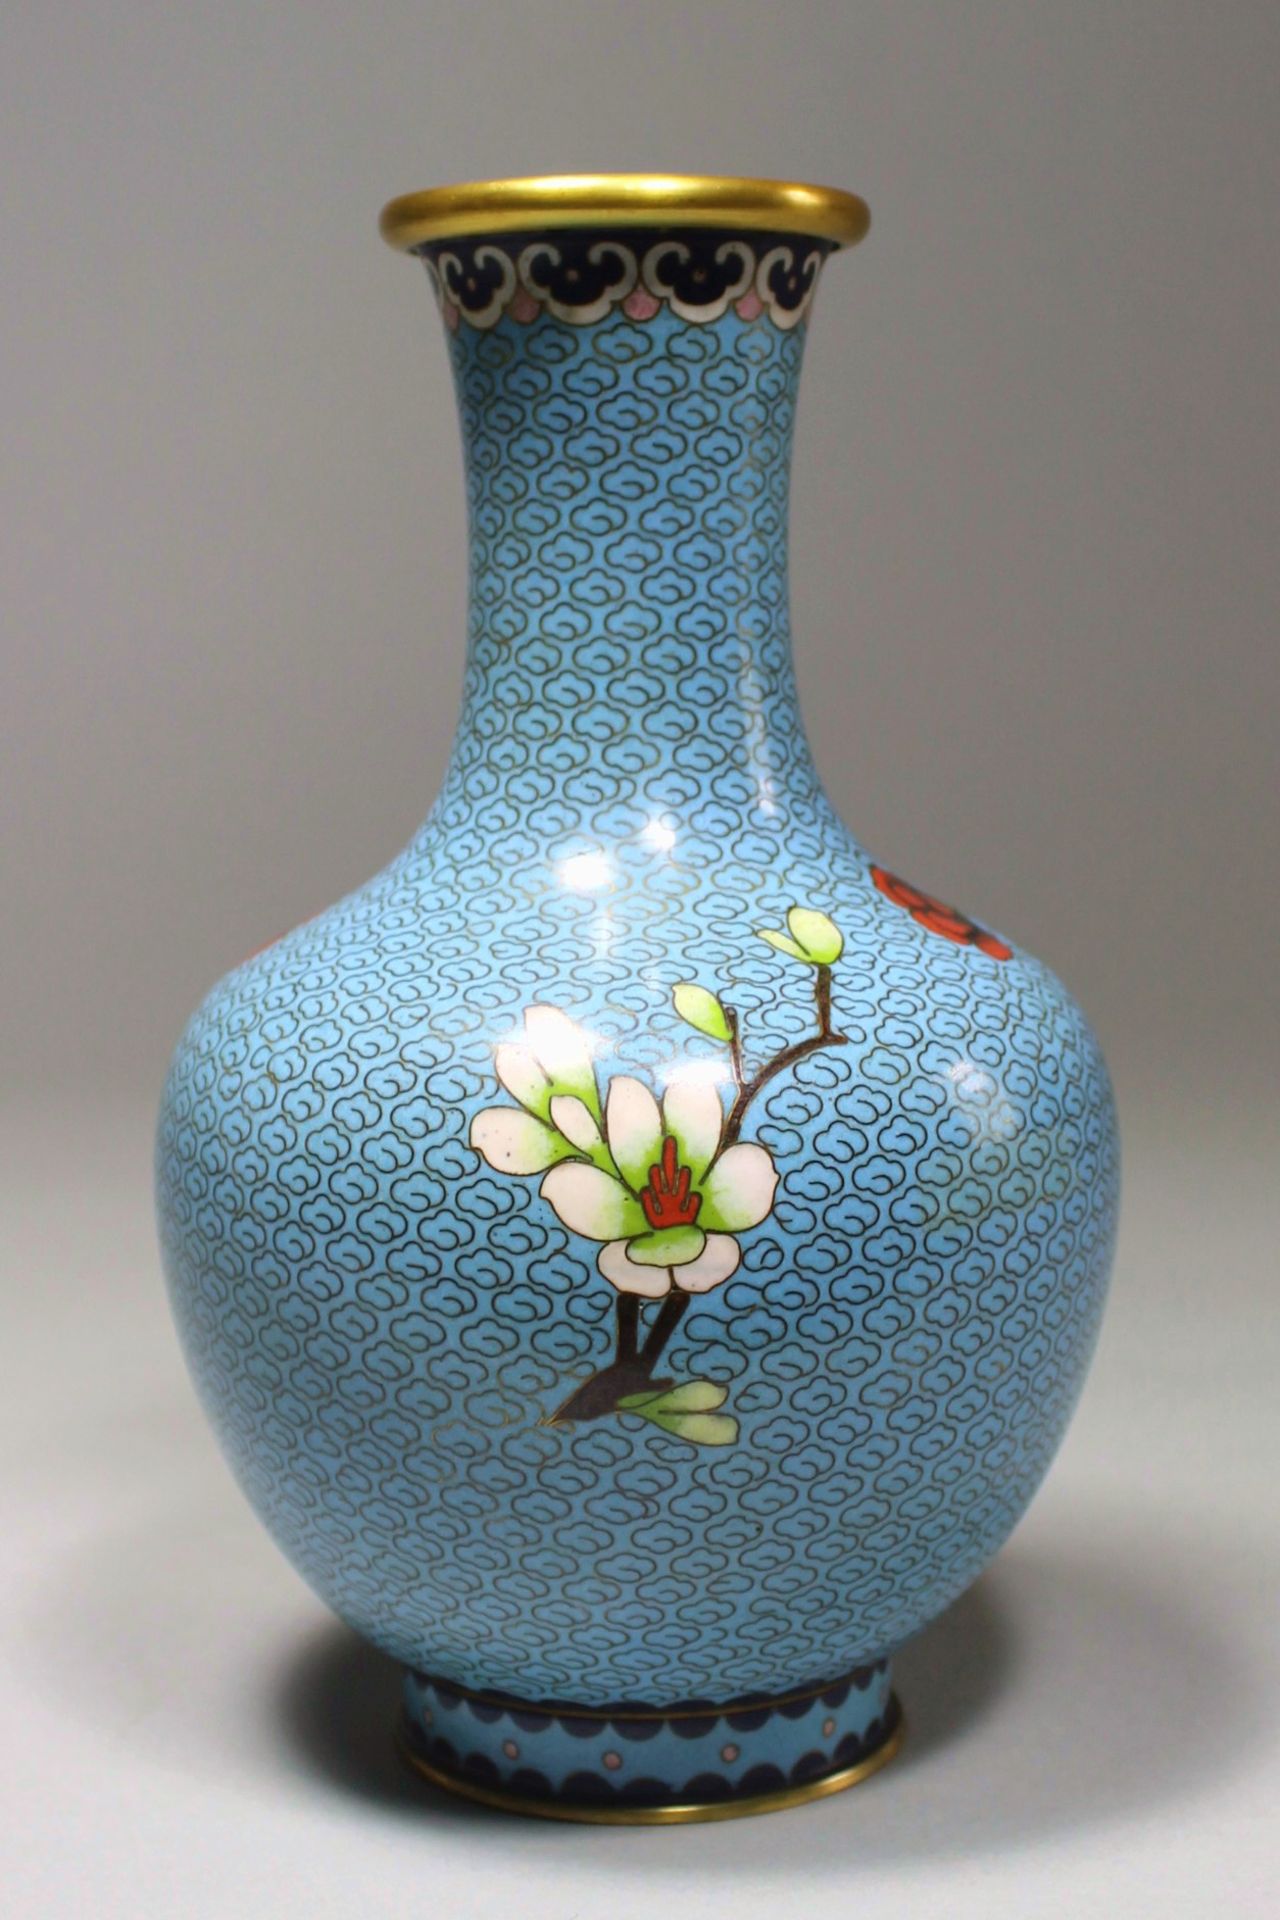 1 Cloisonné-Vase Messing/Emaille, polychromer floraler Dekor auf hellblauem Untergrund, eingezogener - Bild 4 aus 4